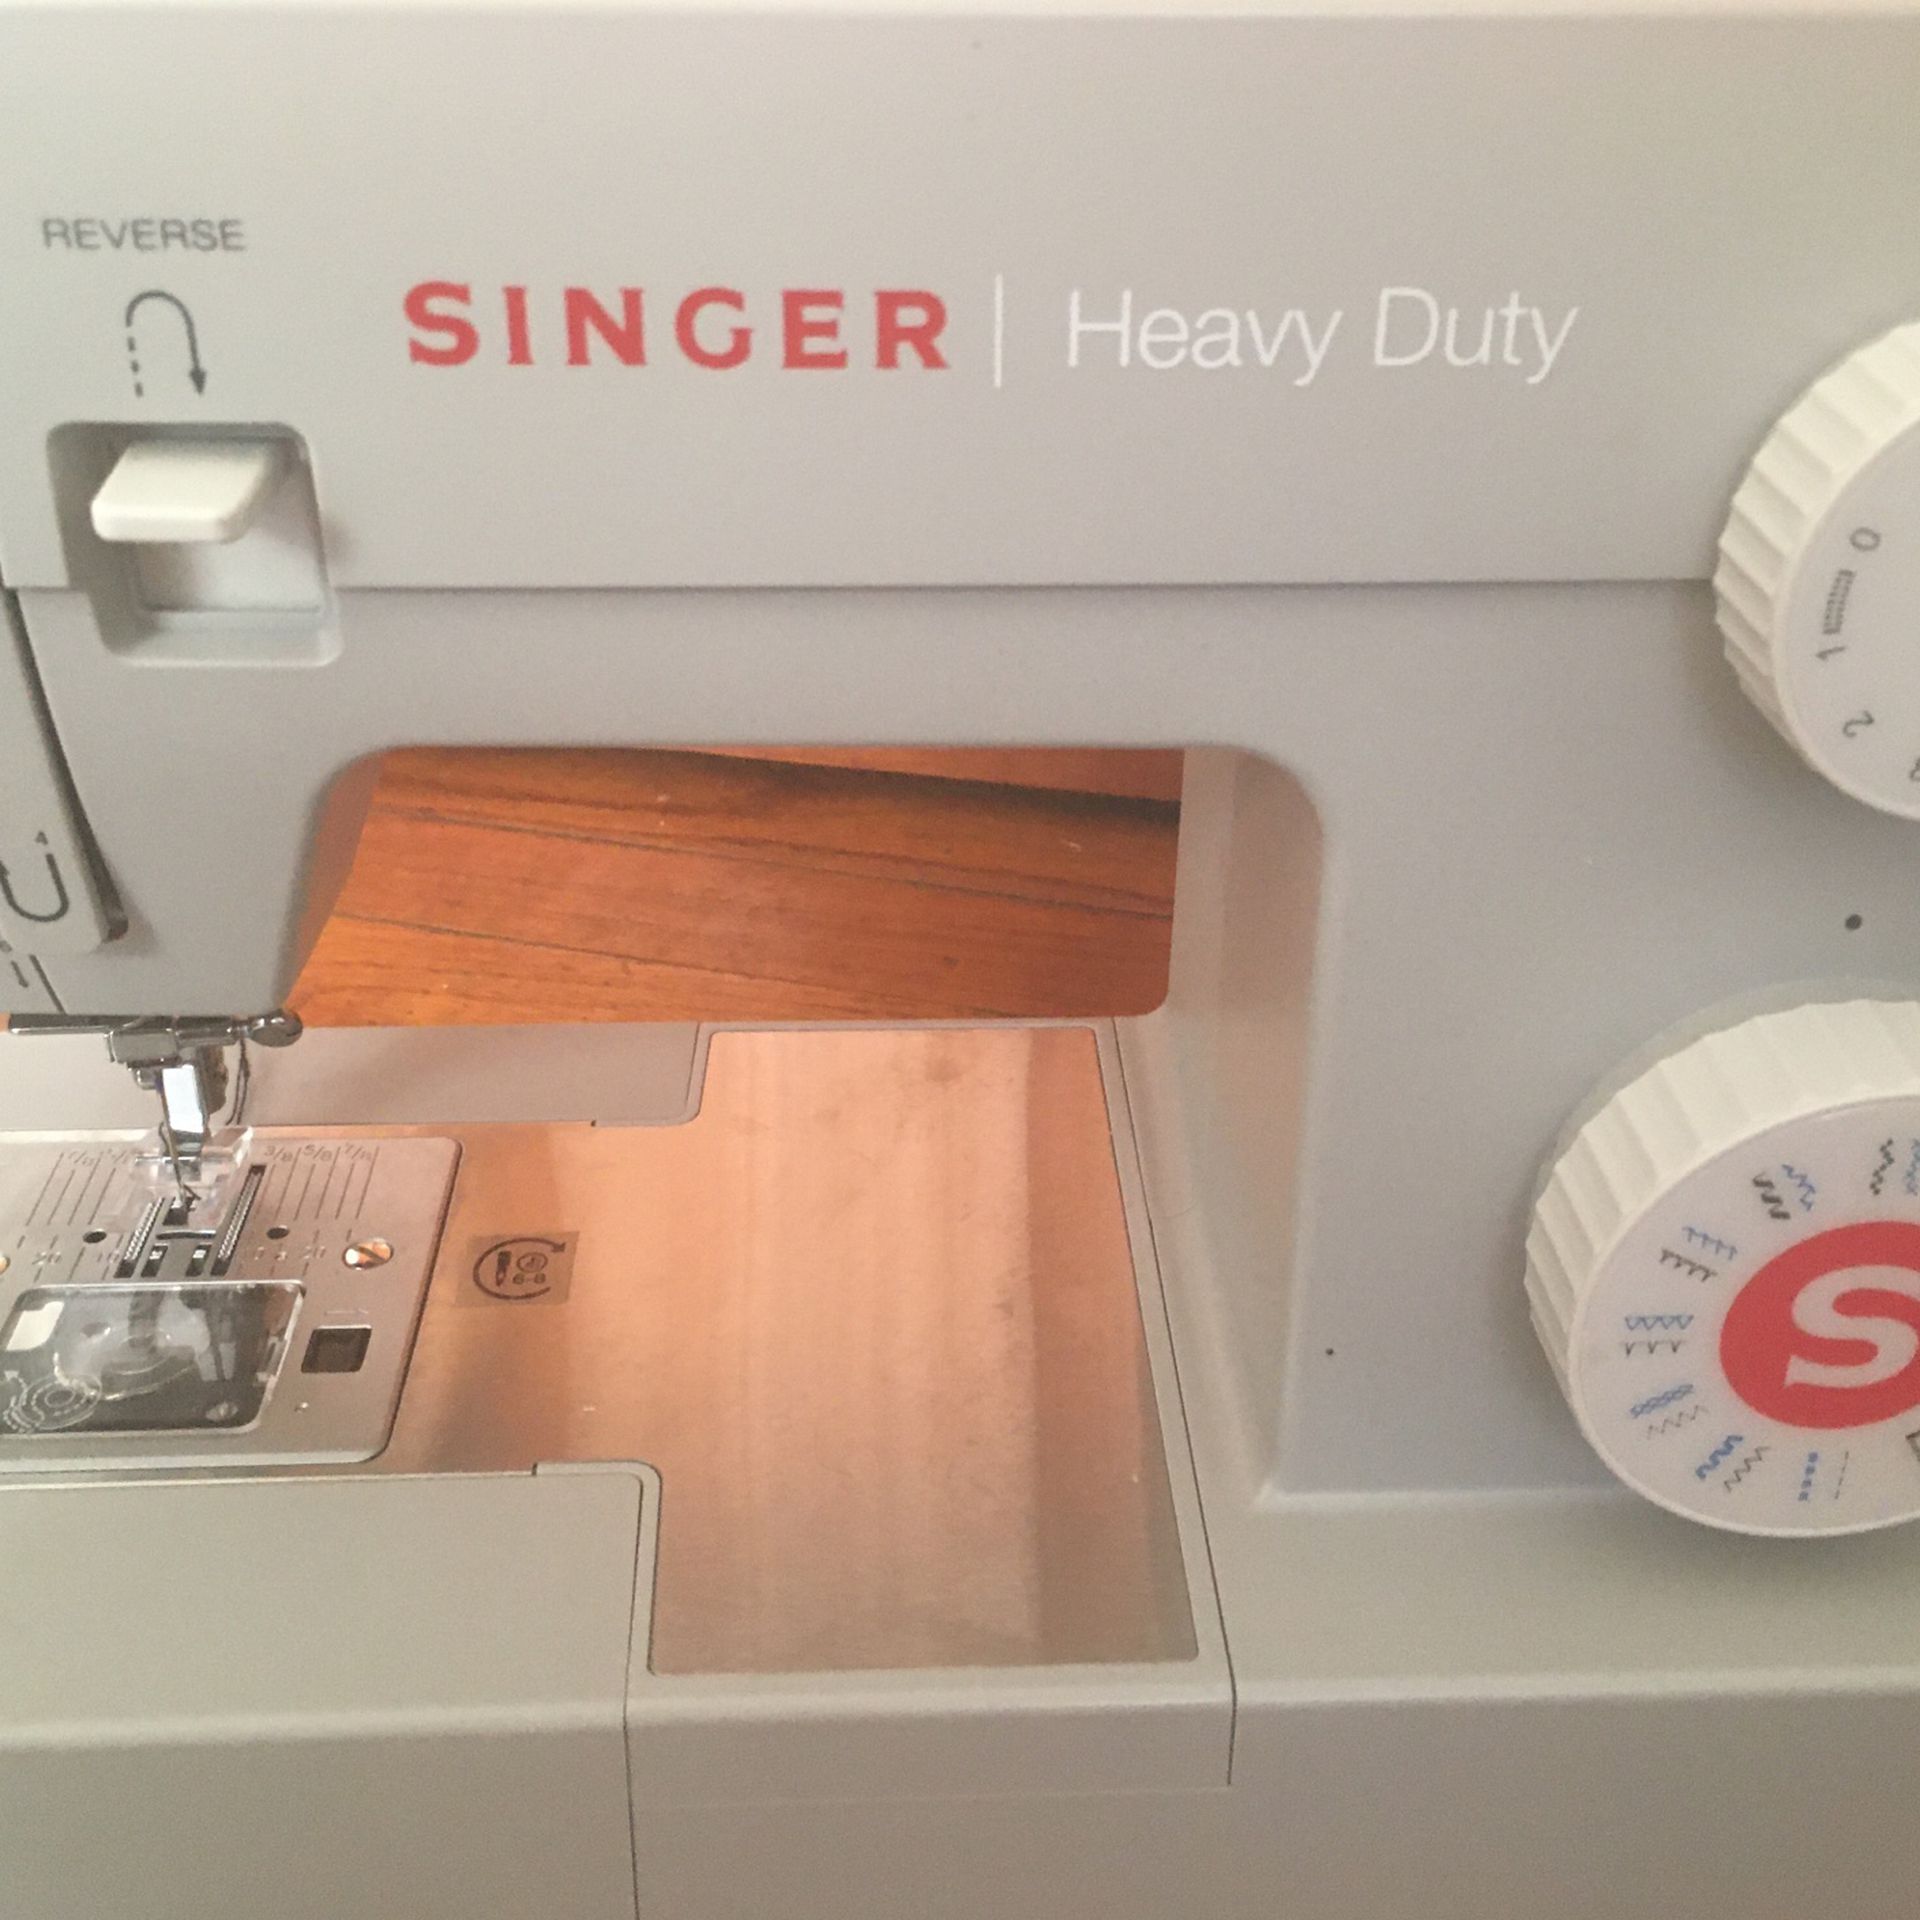 Brand New Sewing Machine 